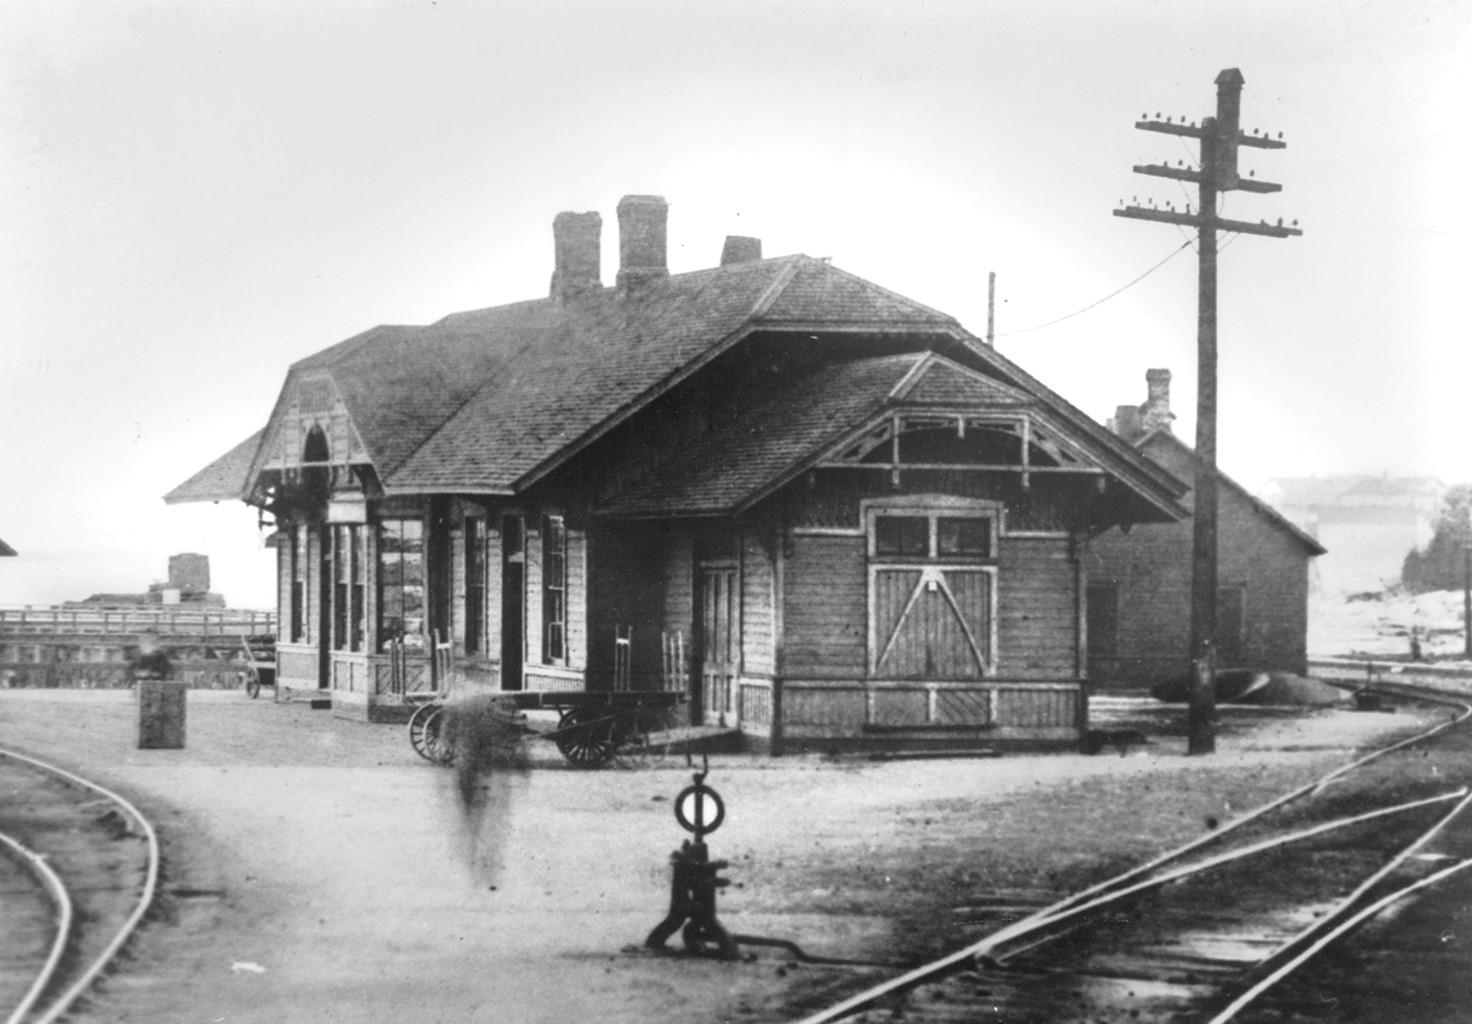 St. Ignace Lakeside Depot